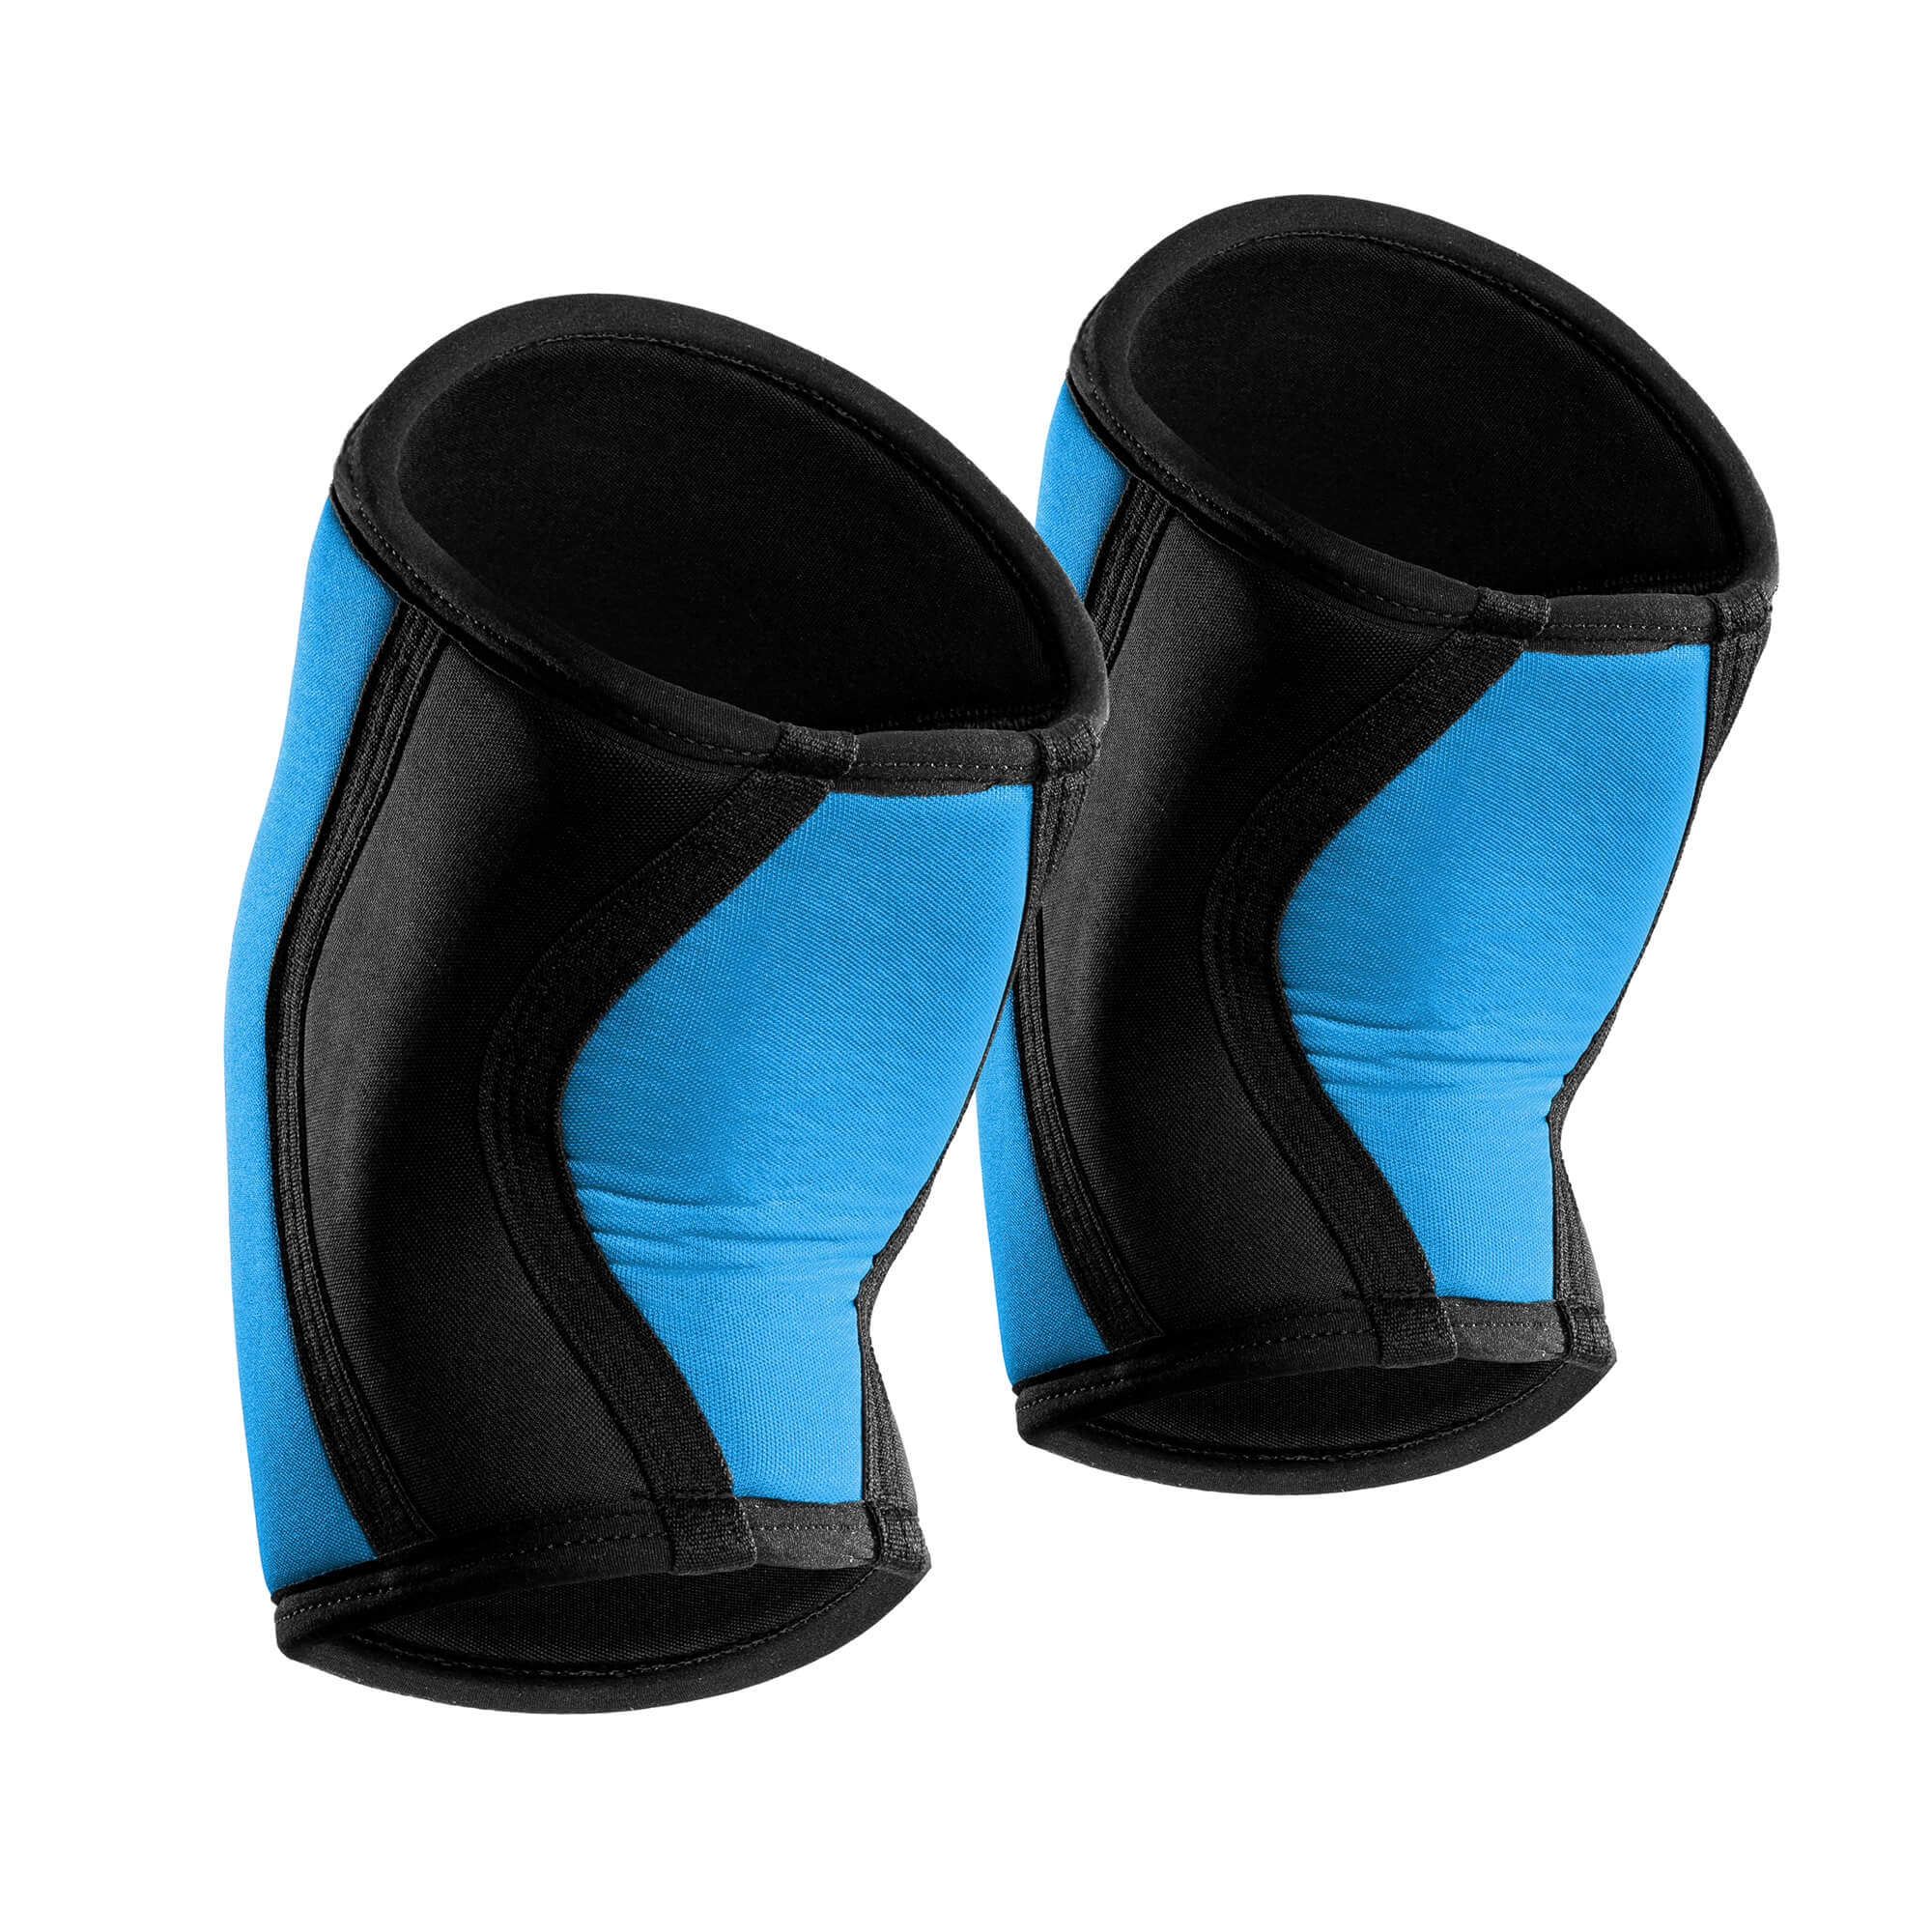 7mm Knee Sleeves (25cm) - Blue